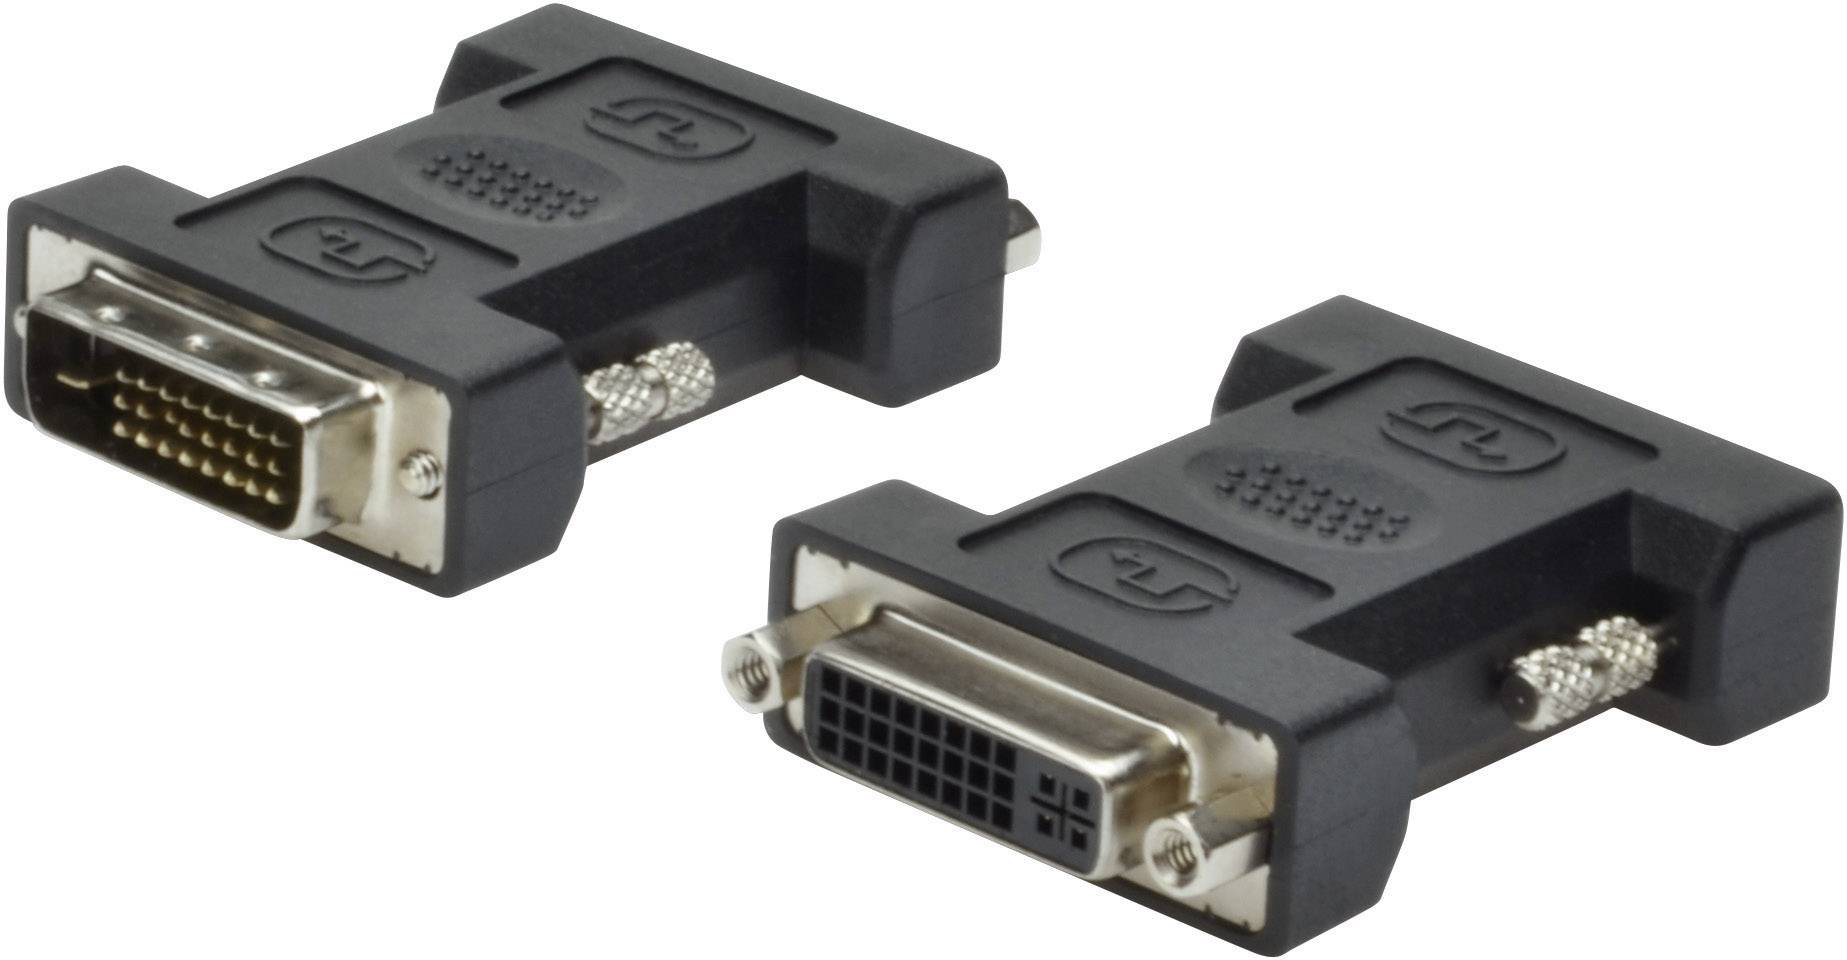 DVI-Adapter DVI-I-24+5-Stecker an SVGA15-Buchse 1 Adapter,Abbildung beidseitig 